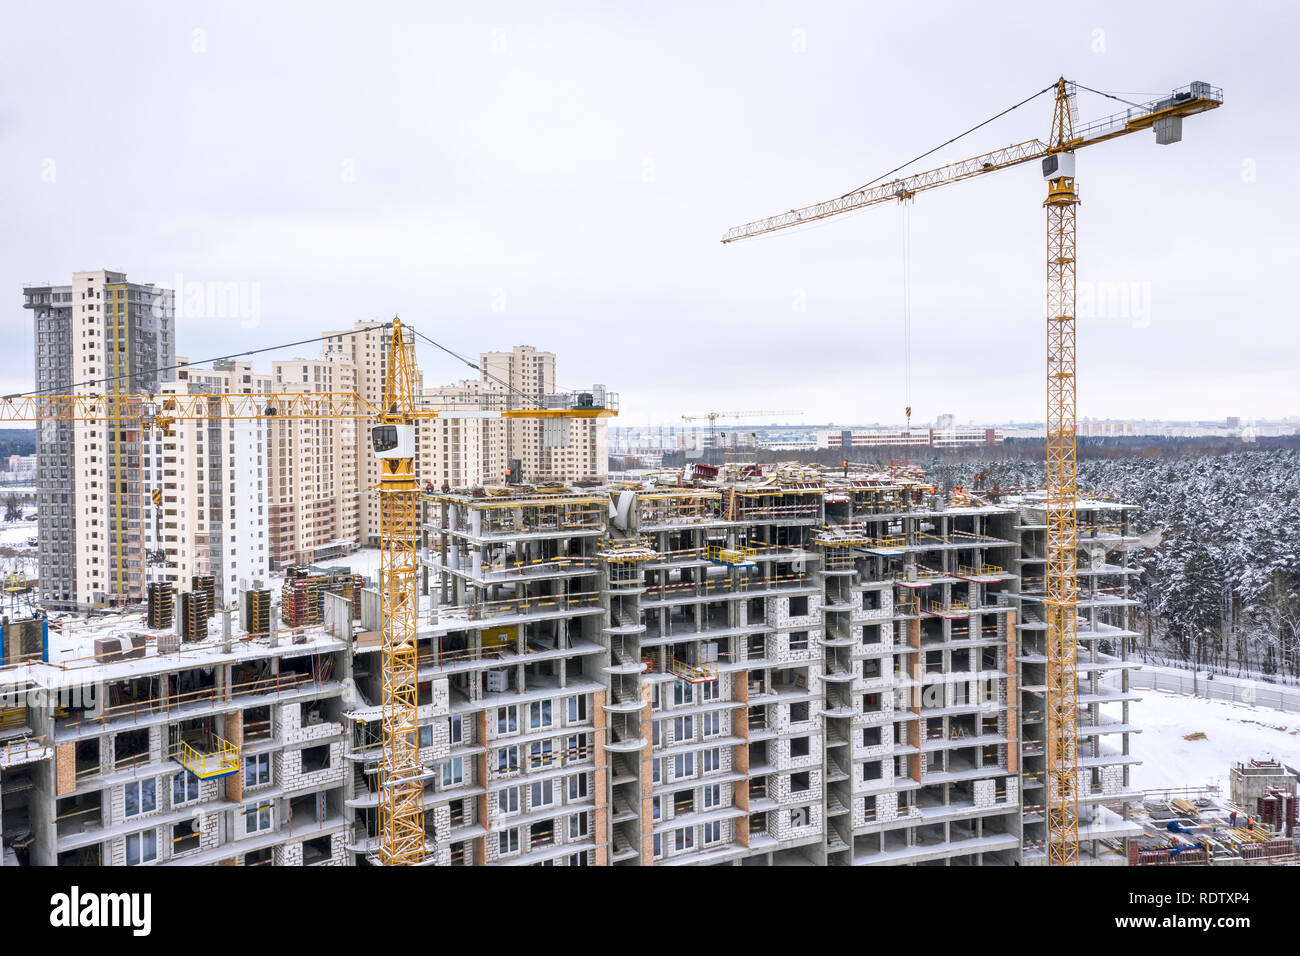 Antenna vista panoramica della città di costruzione sito in inverno. gialla gru a torre la costruzione di nuovi appartamenti residenziali Foto Stock